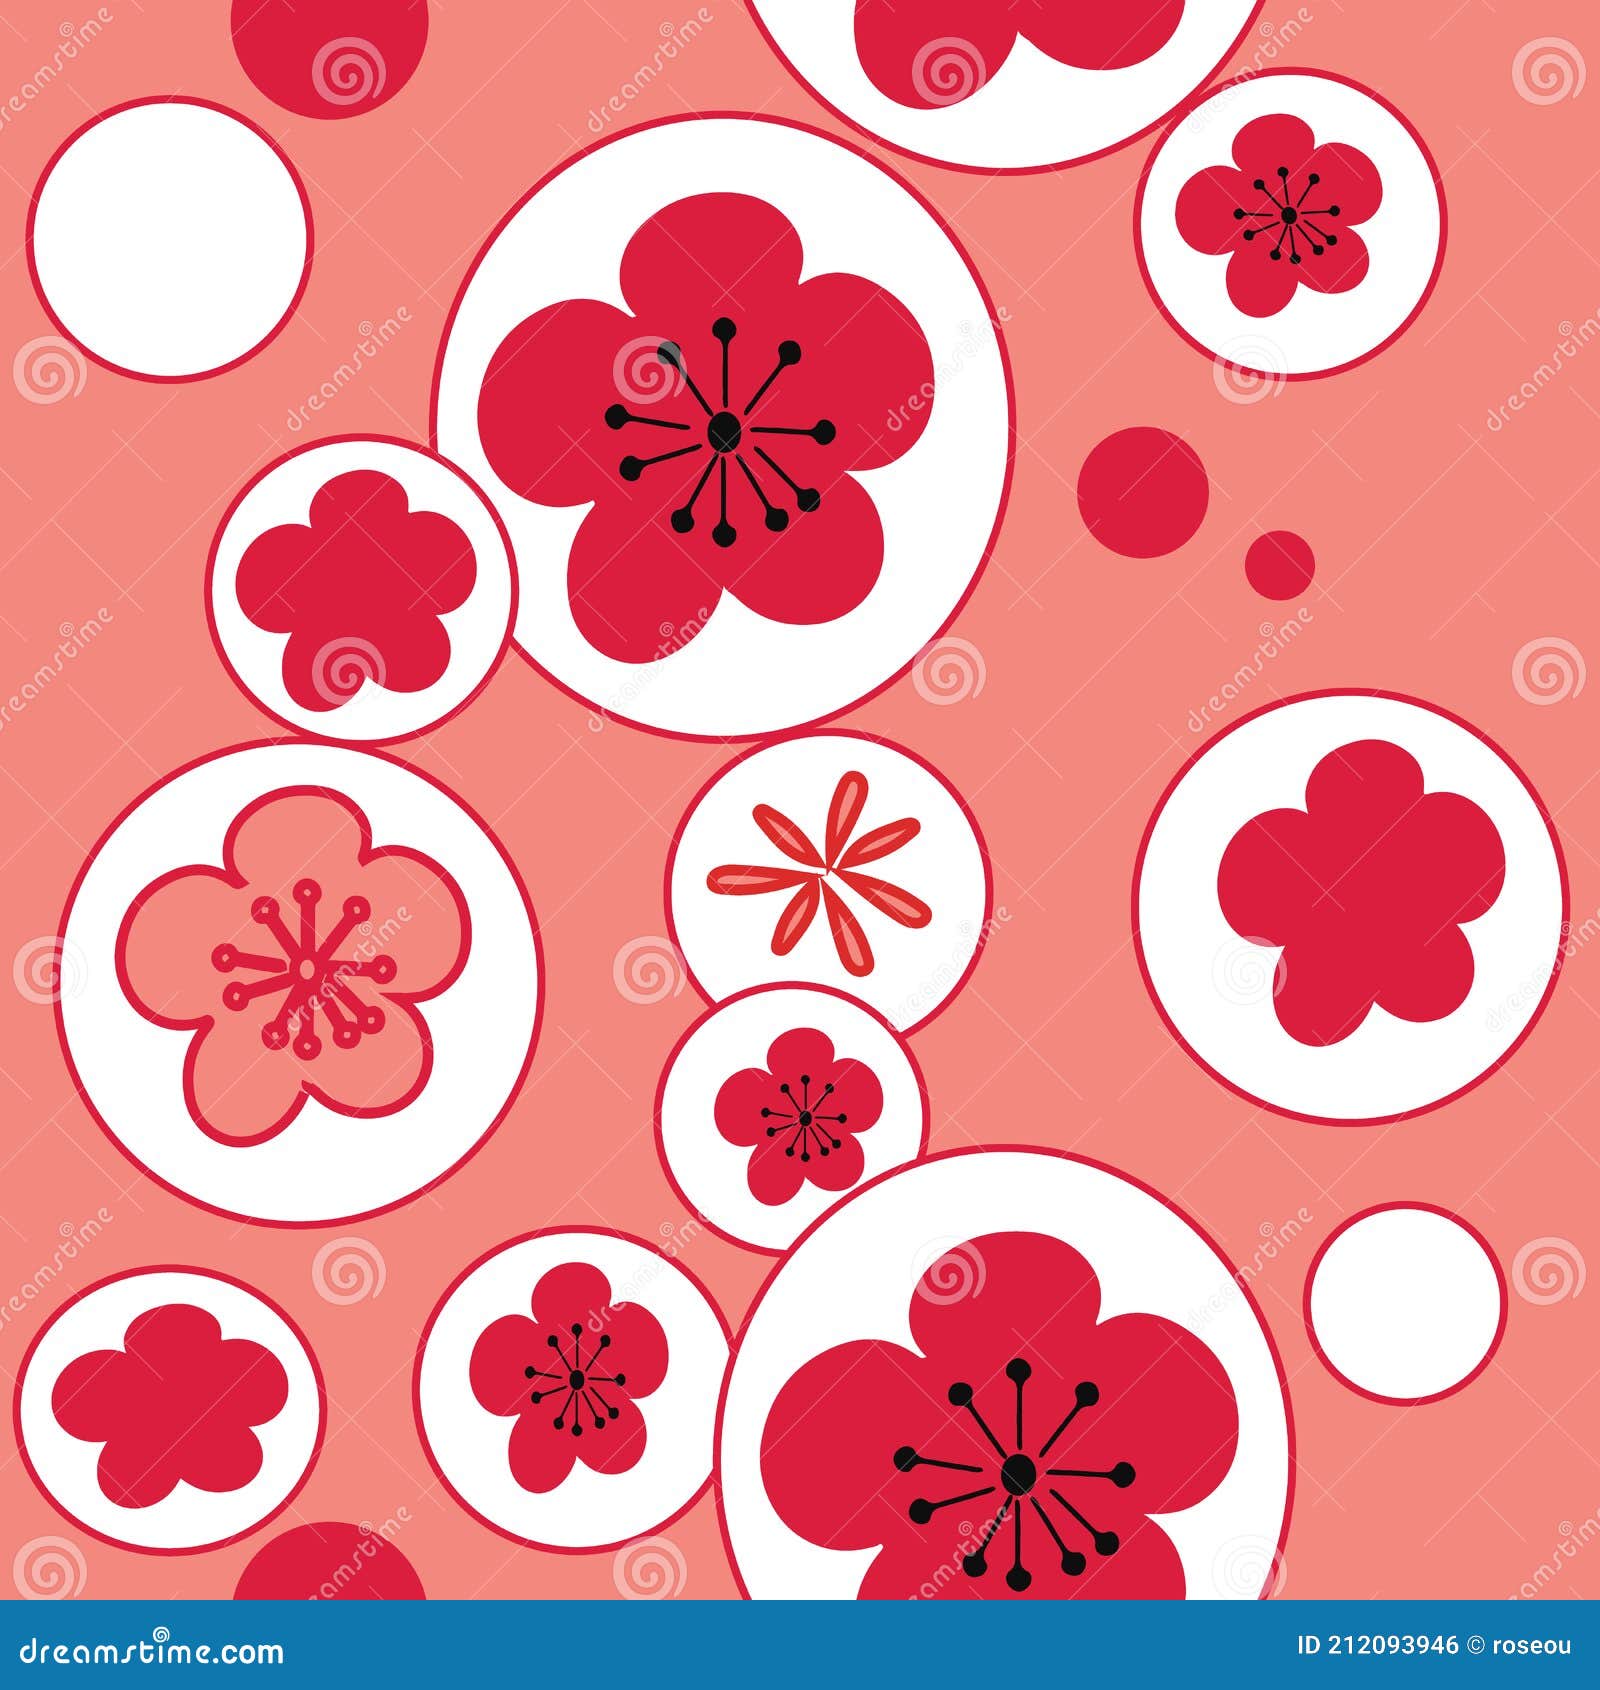 Khi nhắc đến hoa anh đào, ai cũng nghĩ đến vẻ đẹp dịu dàng, lãng mạn của Nhật Bản. Hãy dành chút thời gian để ngắm nhìn bức ảnh liên quan đến Cherry Blossom này, bạn sẽ có những trải nghiệm tuyệt vời về vẻ đẹp tự nhiên đầy tinh tế.